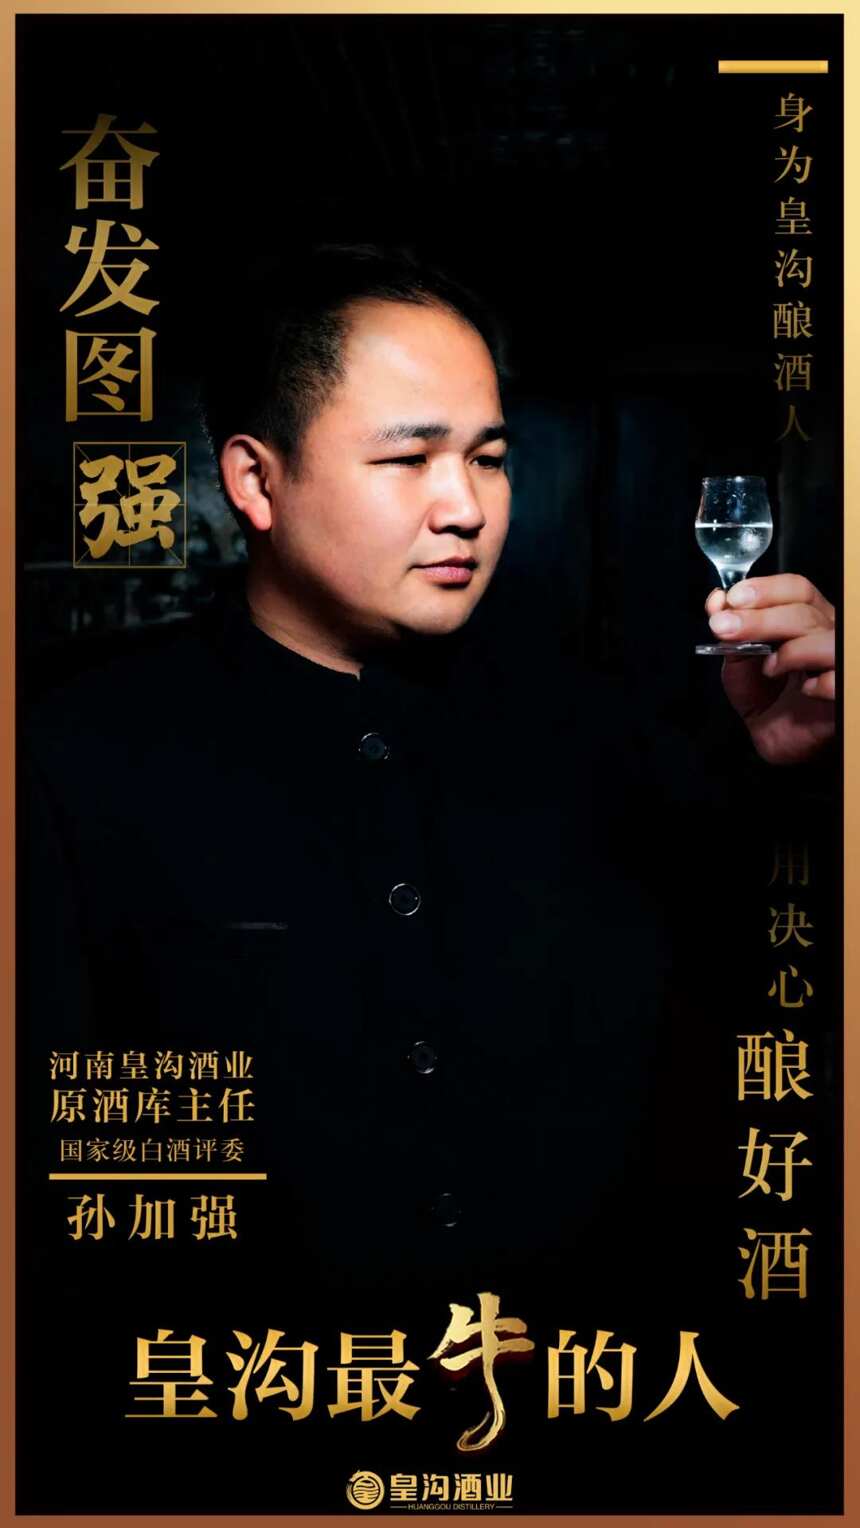 皇沟酒业再添4名中国酒业协会国家级白酒评委